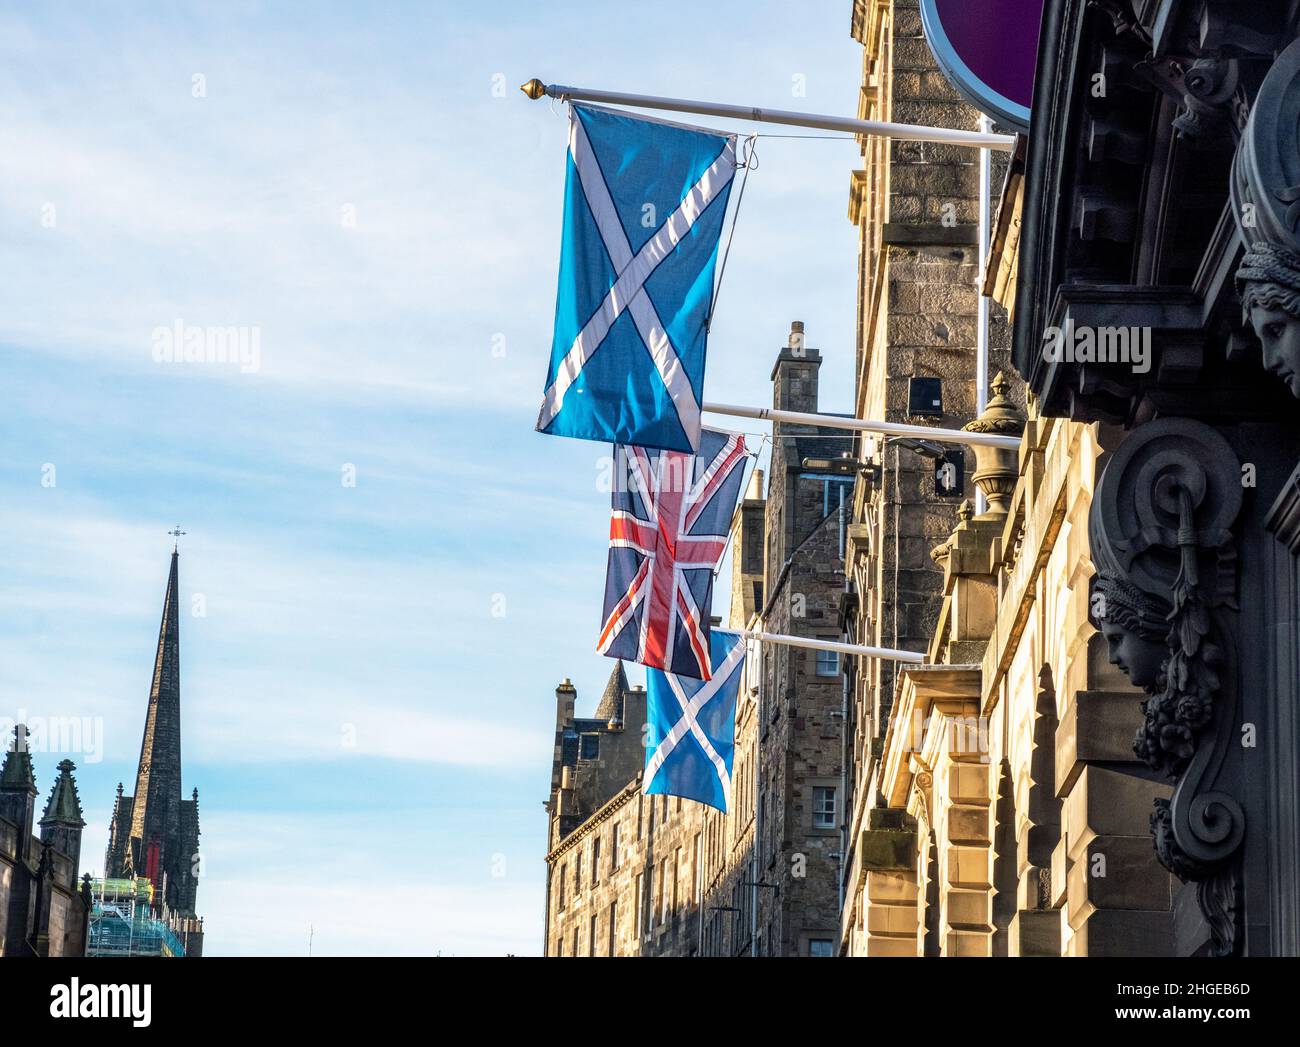 Les drapeaux Union Jack et Scottish Saltyre sont suspendus à l'extérieur des chambres de la ville d'Édimbourg sur High Street, Édimbourg. Banque D'Images